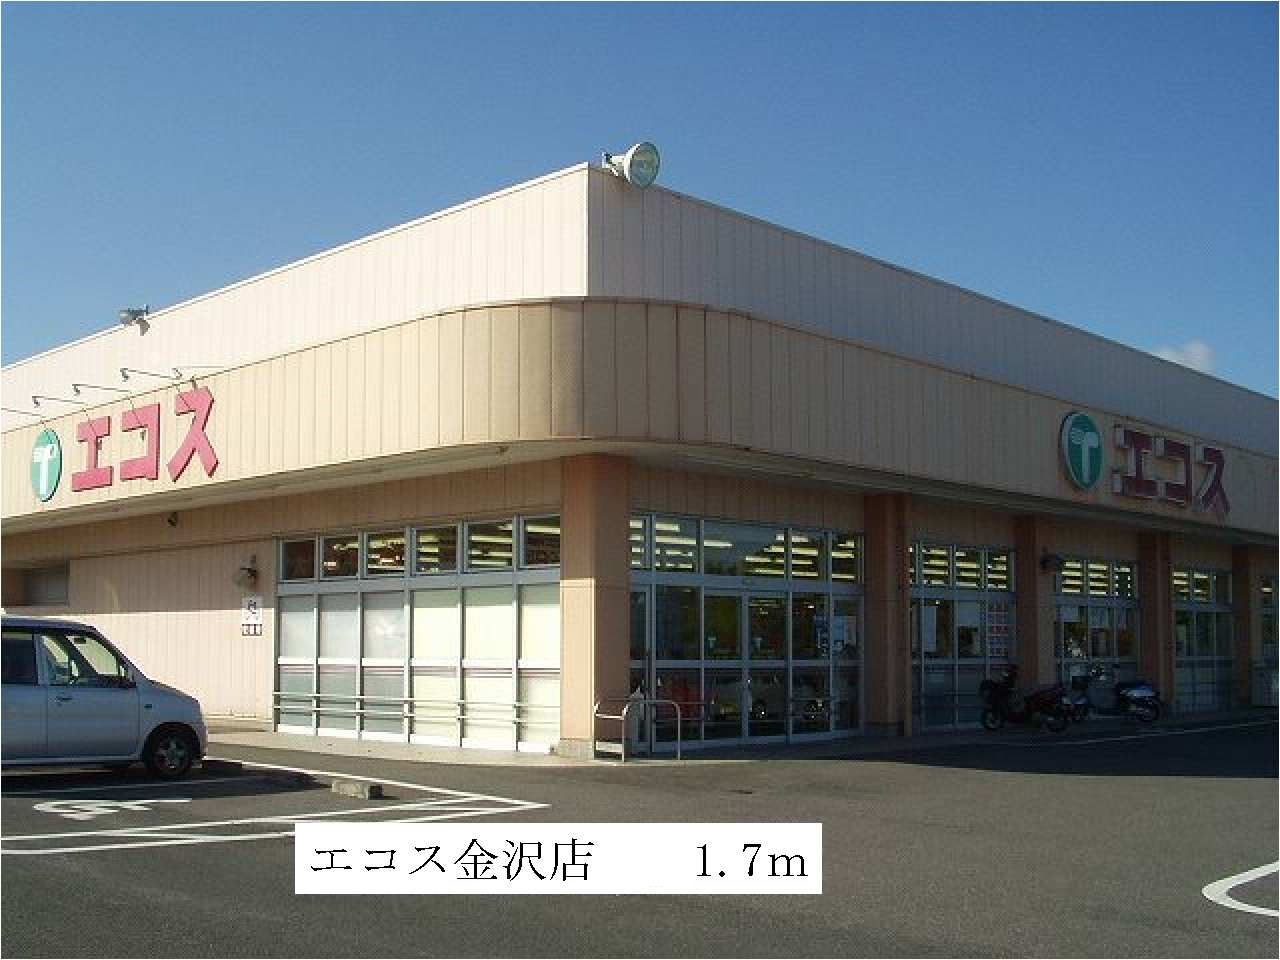 Supermarket. Ecos Kanazawa store up to (super) 1700m